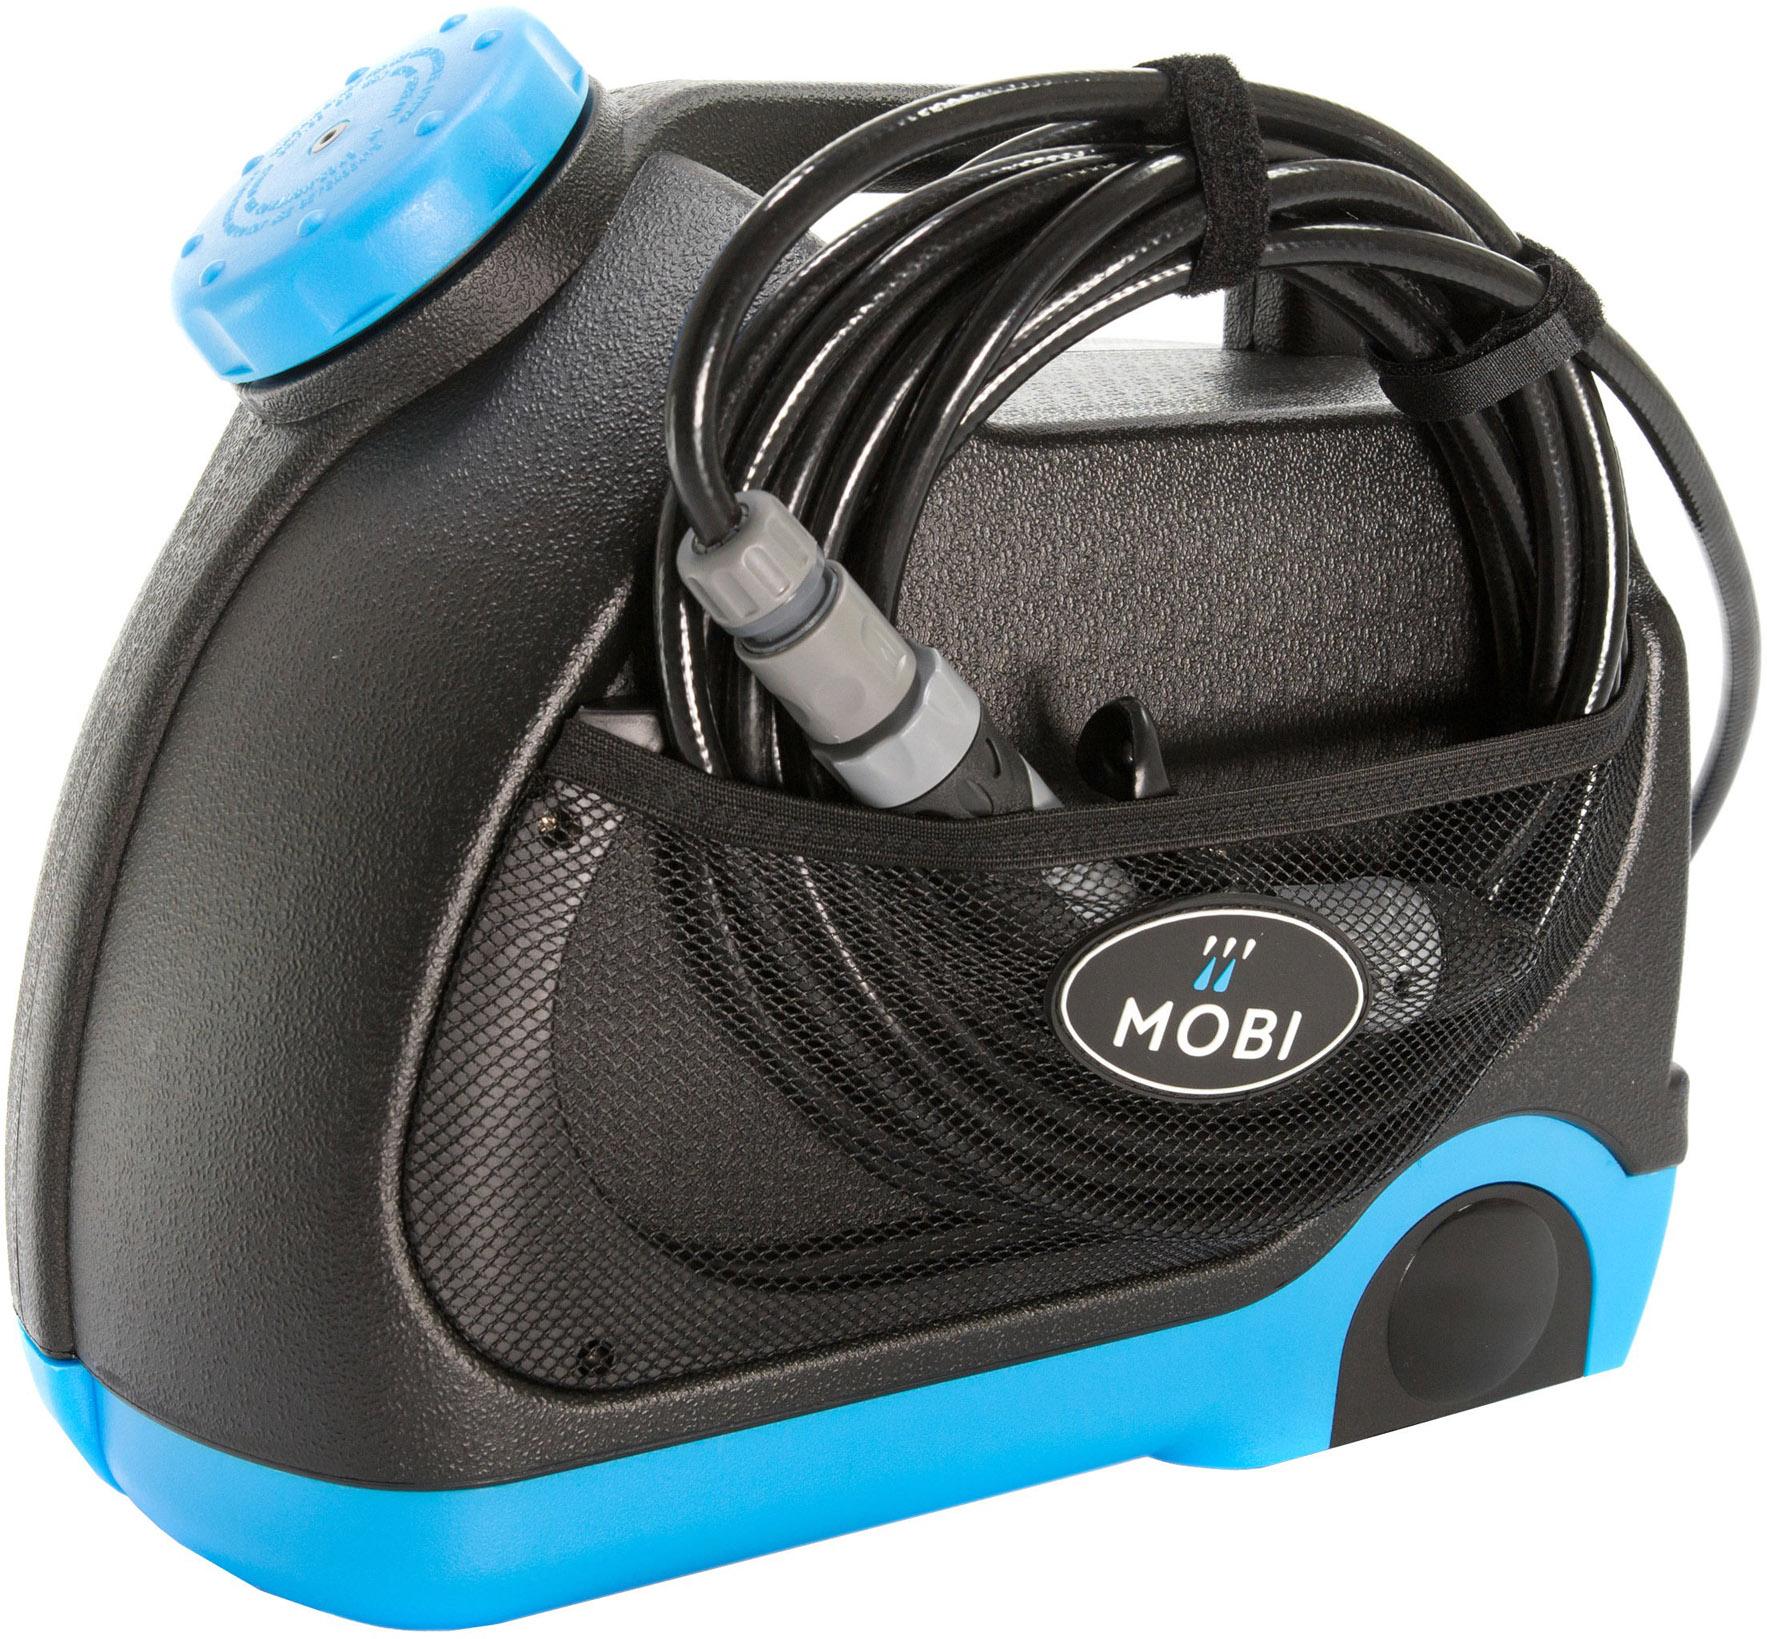 Mobi V-15 Portable Bike Pressure Washer - Blue